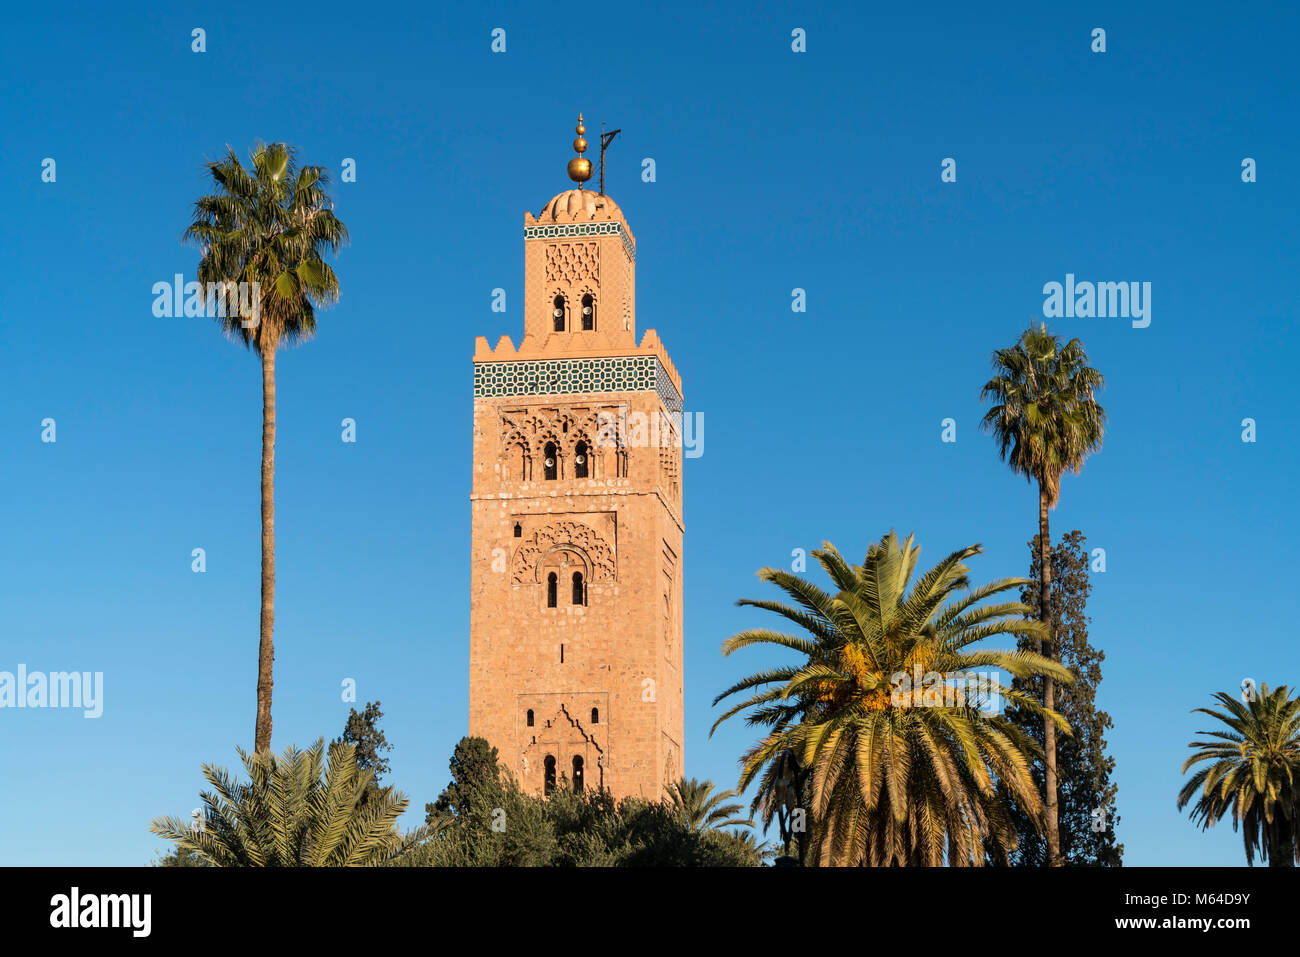 Minarett der Koutoubia-Moschee, Königreich Marokko, Afrika | Moschee Koutoubia Minarett, Marrakesch, Königreich Marokko, Afrika Stockfoto